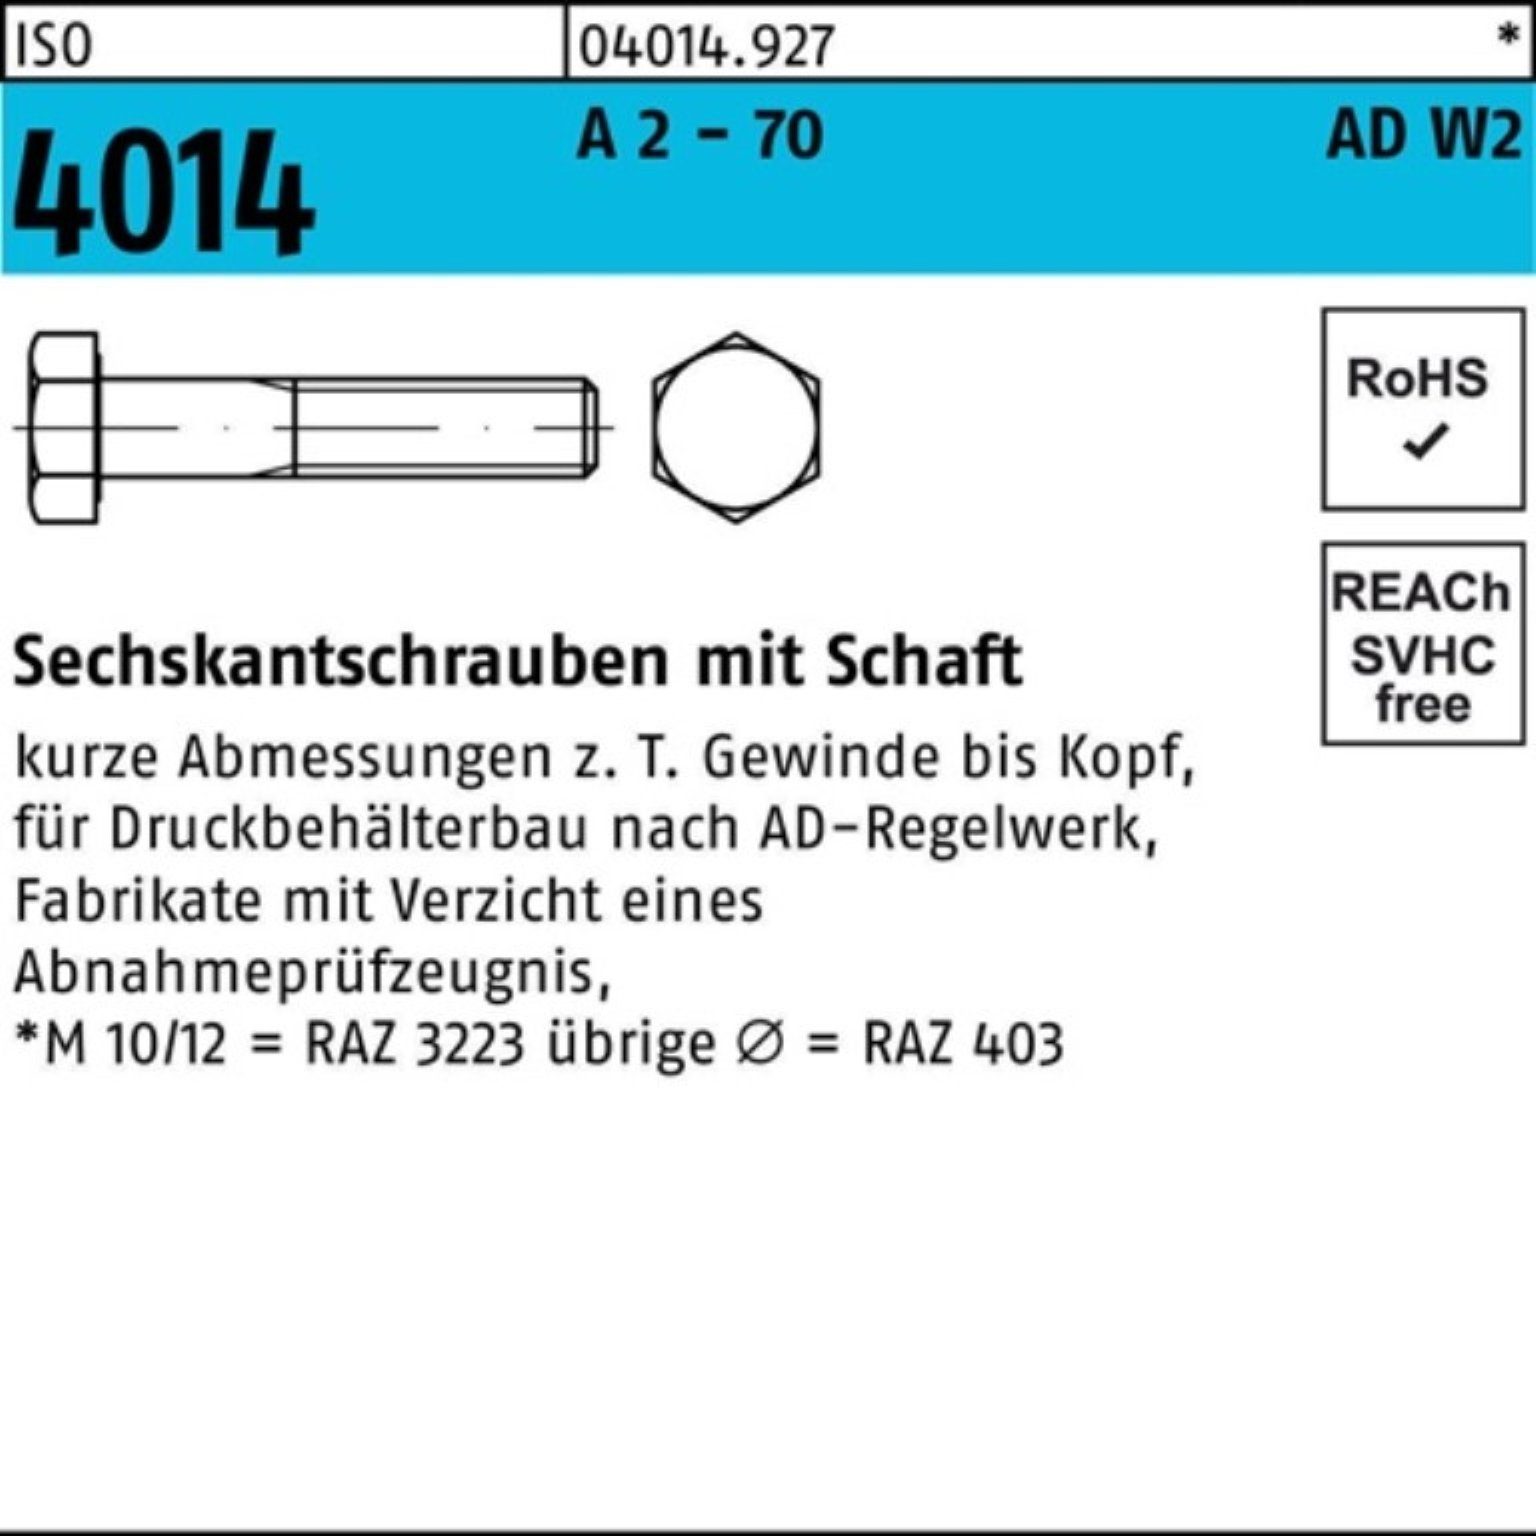 2 M12x 130 Sechskantschraube - 4014 2 AD-W2 Pack 100er A ISO 70 Sechskantschraube Bufab Schaft